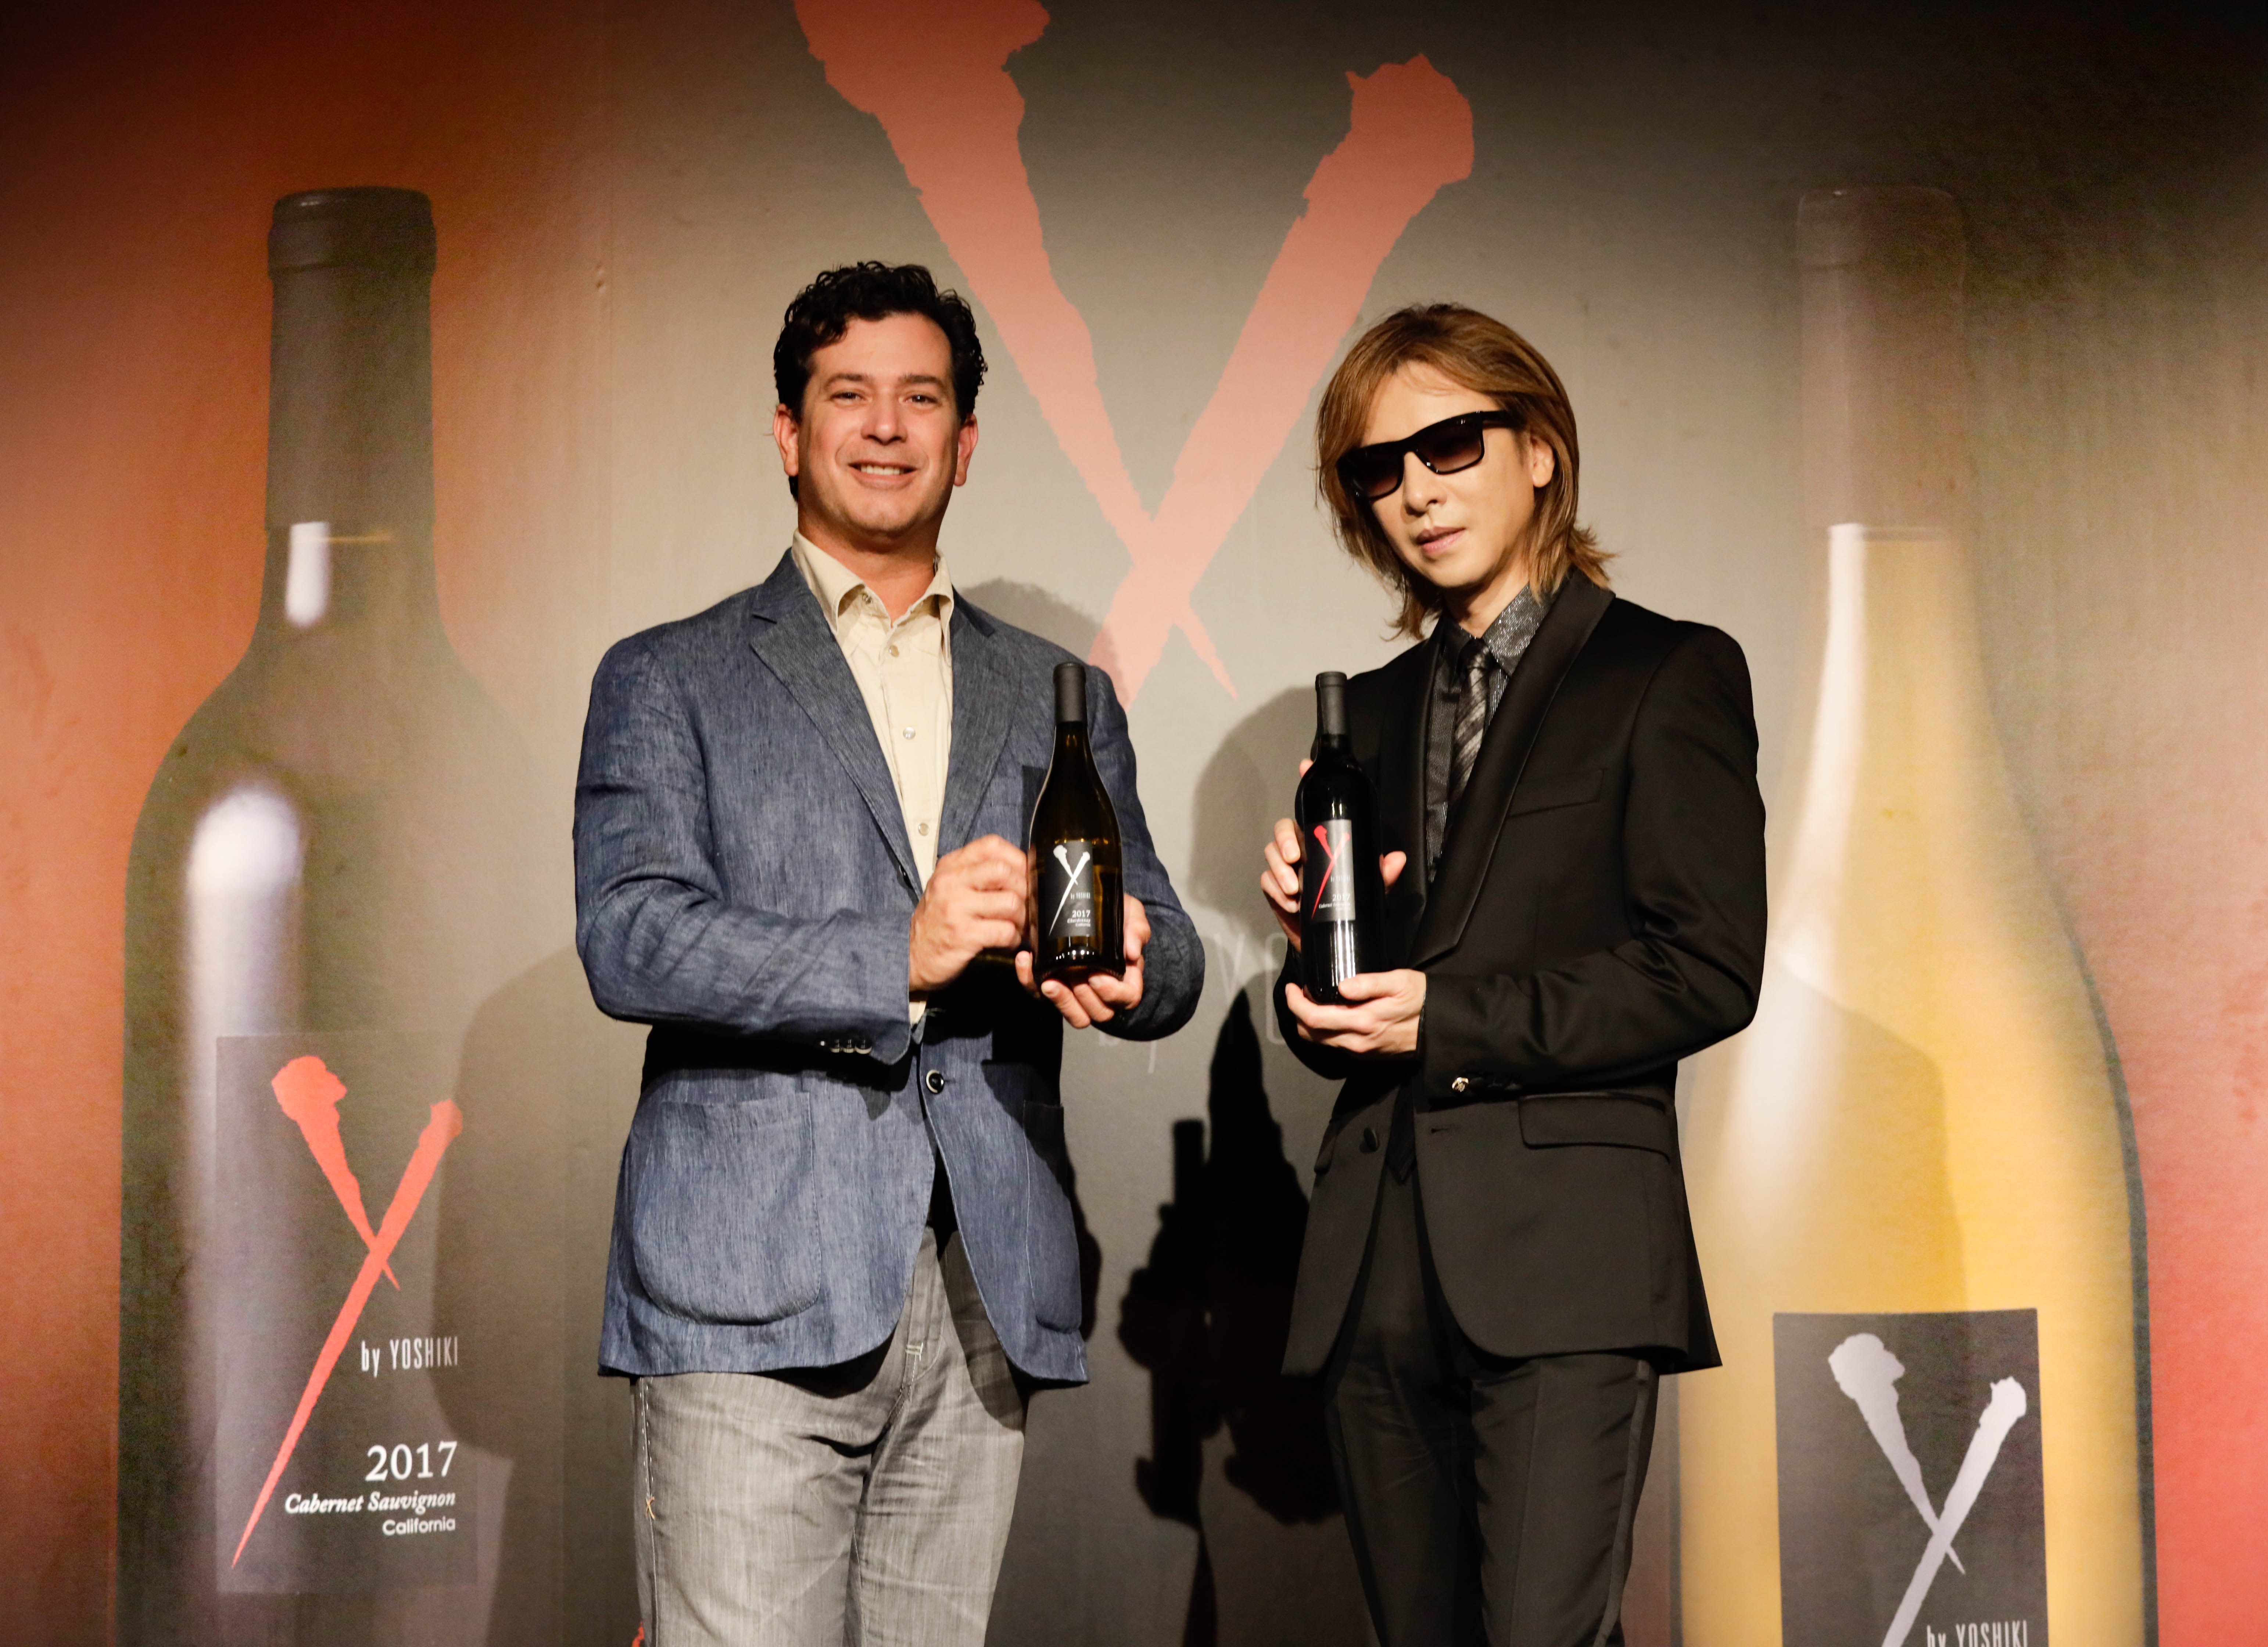 幻のYOSHIKIワイン「Y by Yoshiki」の新作ワインが完成、YOSHIKIも